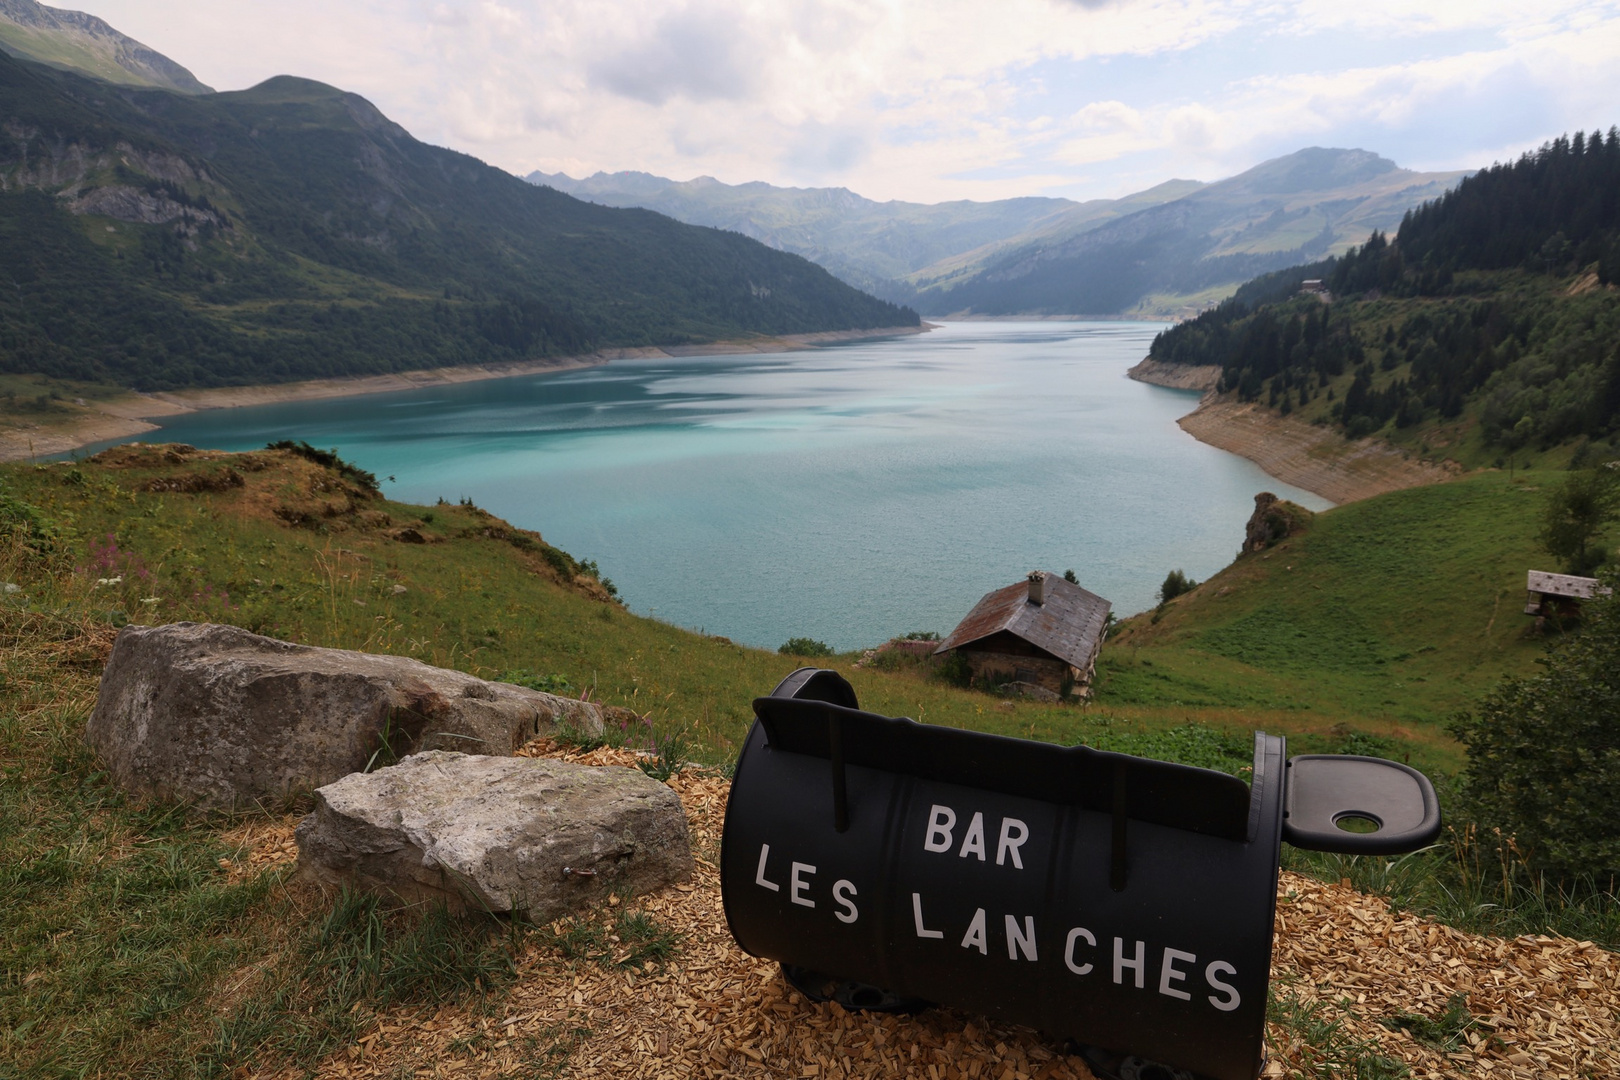 Bar Les Lanches